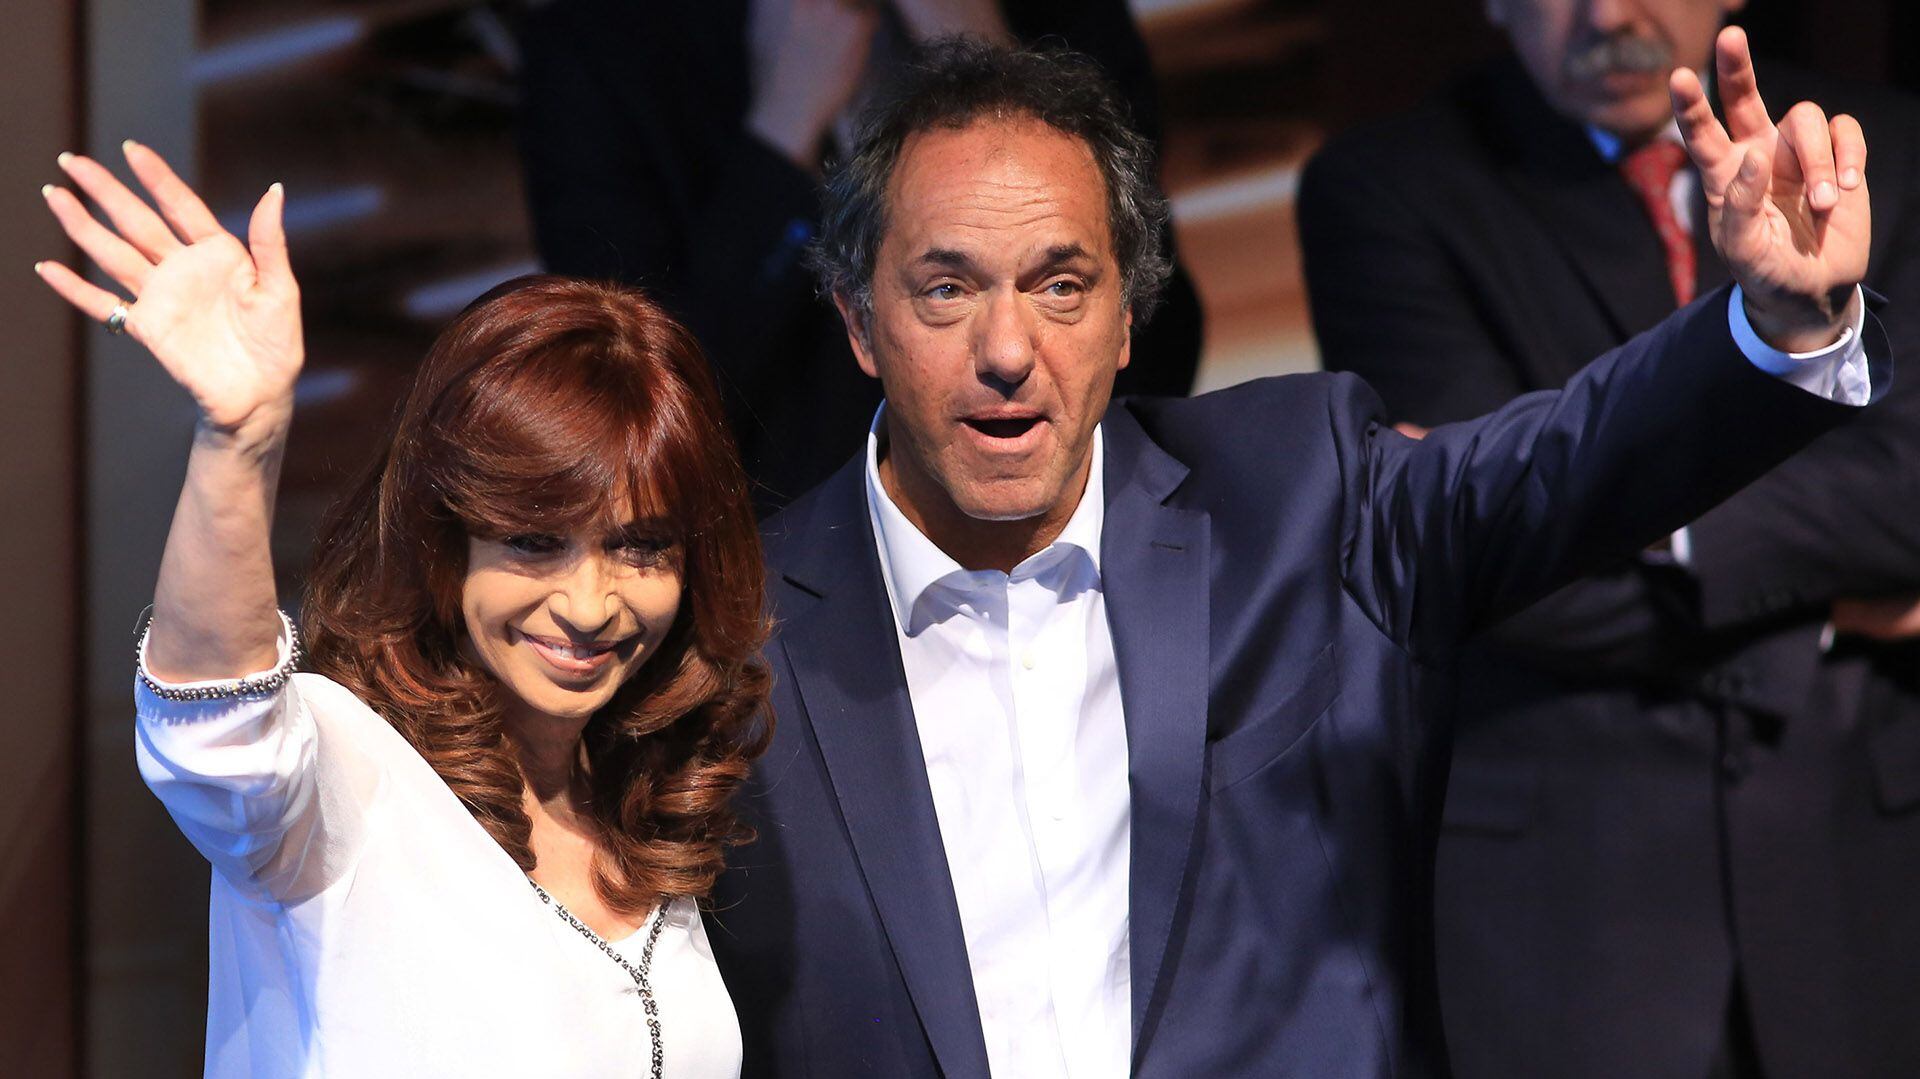 La entonces presidenta Cristina Kirchner junto a Daniel Scioli, quien en 2015 era gobernador bonaerense y candidato a sucederla